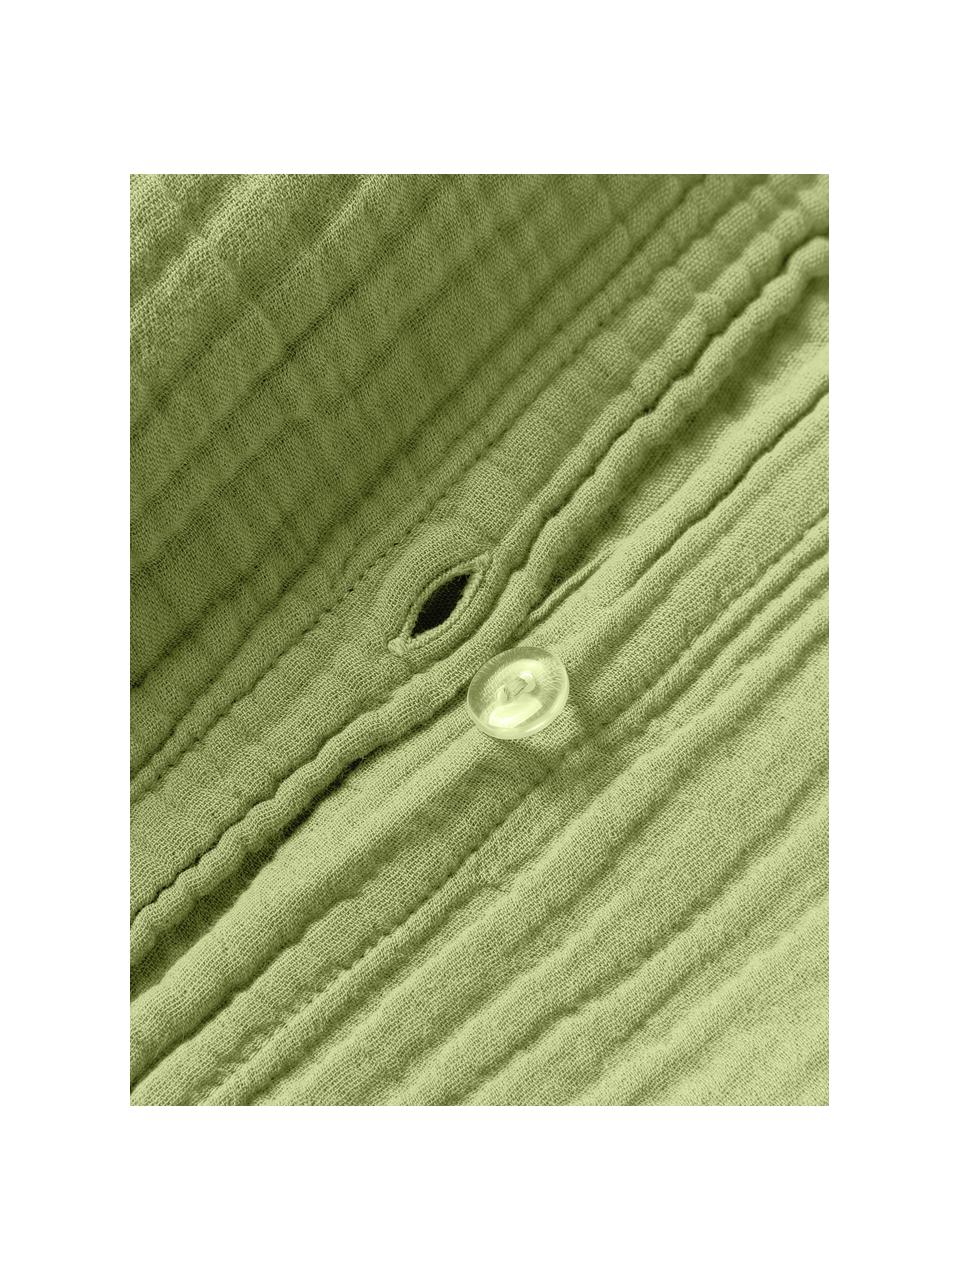 Musselin-Bettdeckenbezug Odile, Webart: Musselin Fadendichte 200 , Olivgrün, B 200 x L 200 cm